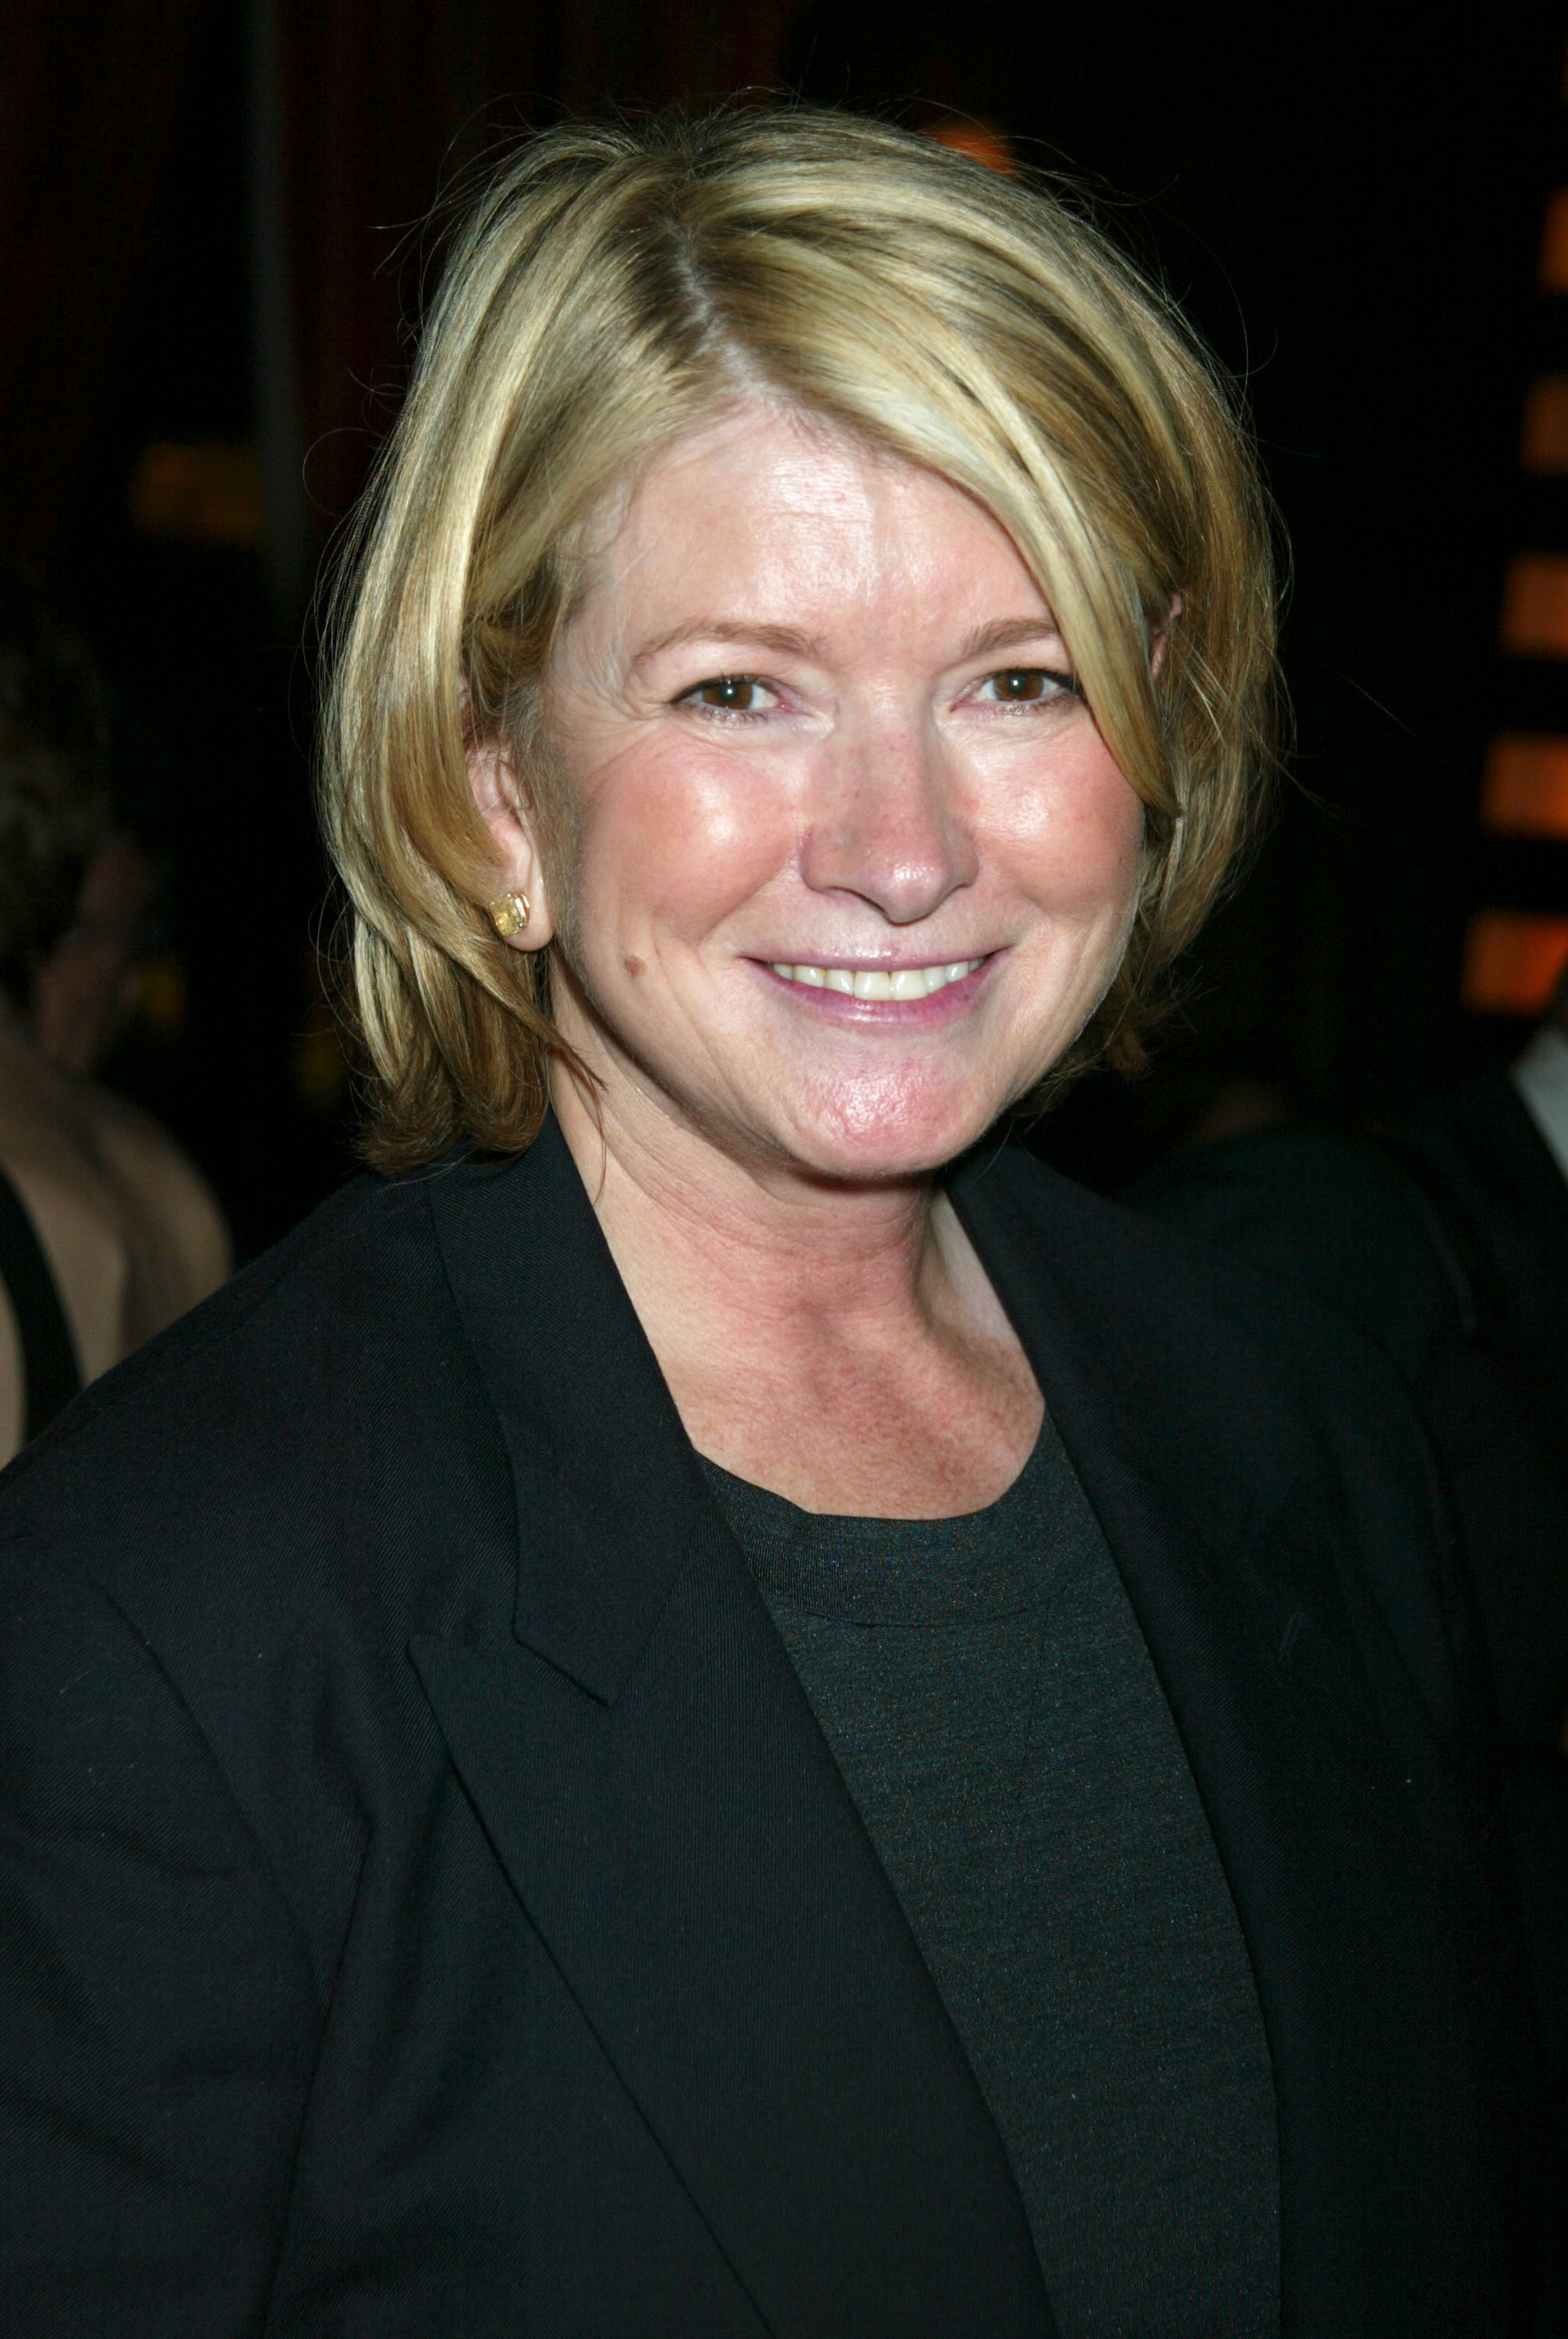 Martha Stewart, 2000 | Source: Getty Images